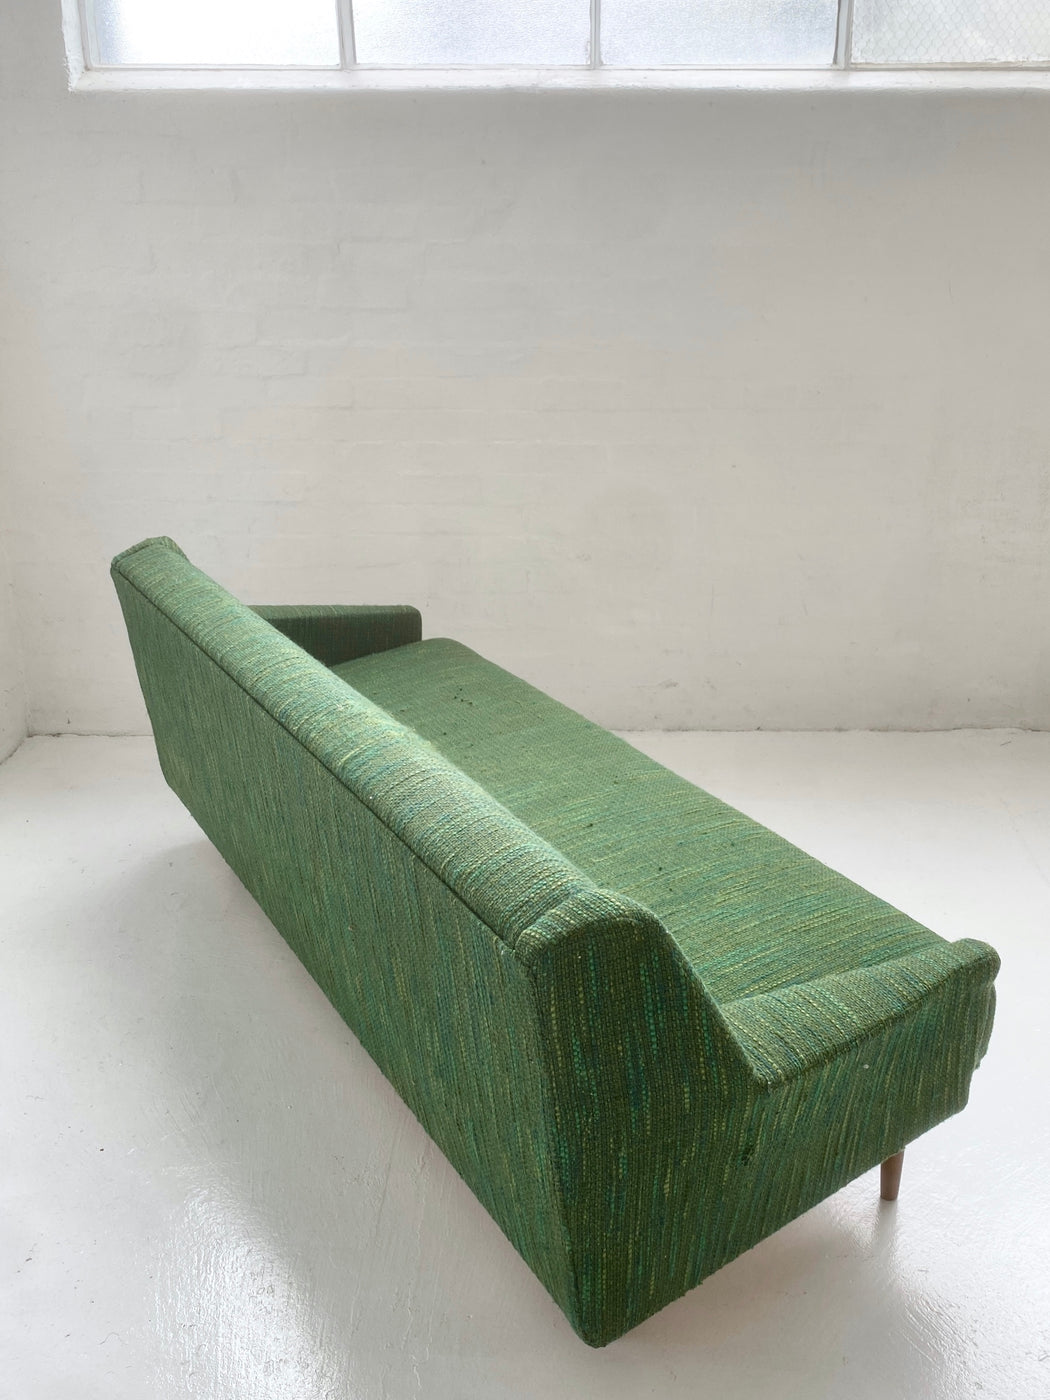 Classic Danish Sofa Bed